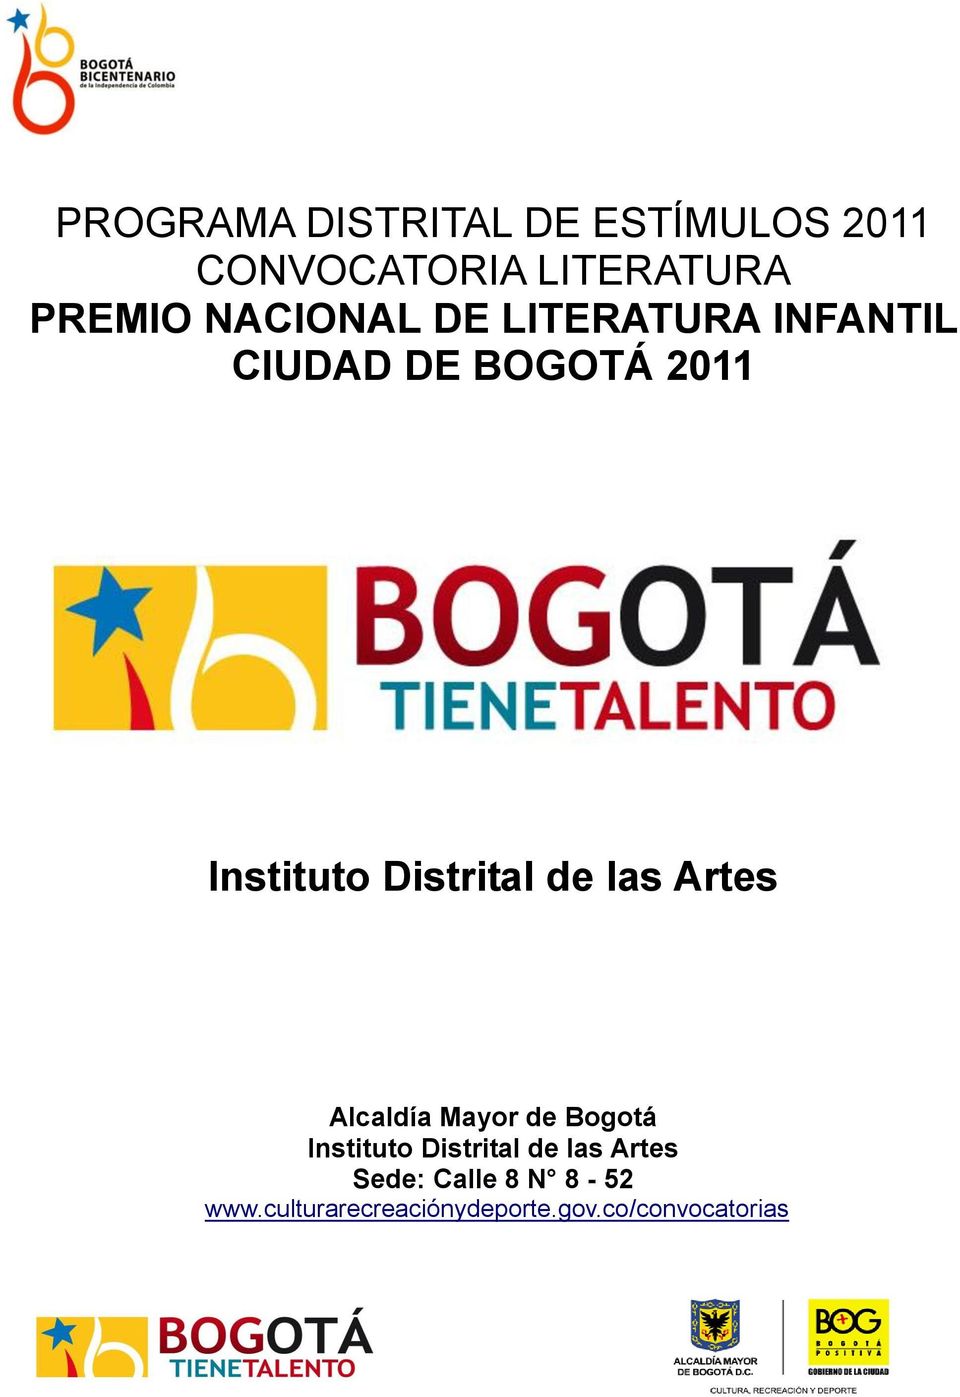 Distrital de las Artes Alcaldía Mayor de Bogotá Instituto Distrital de